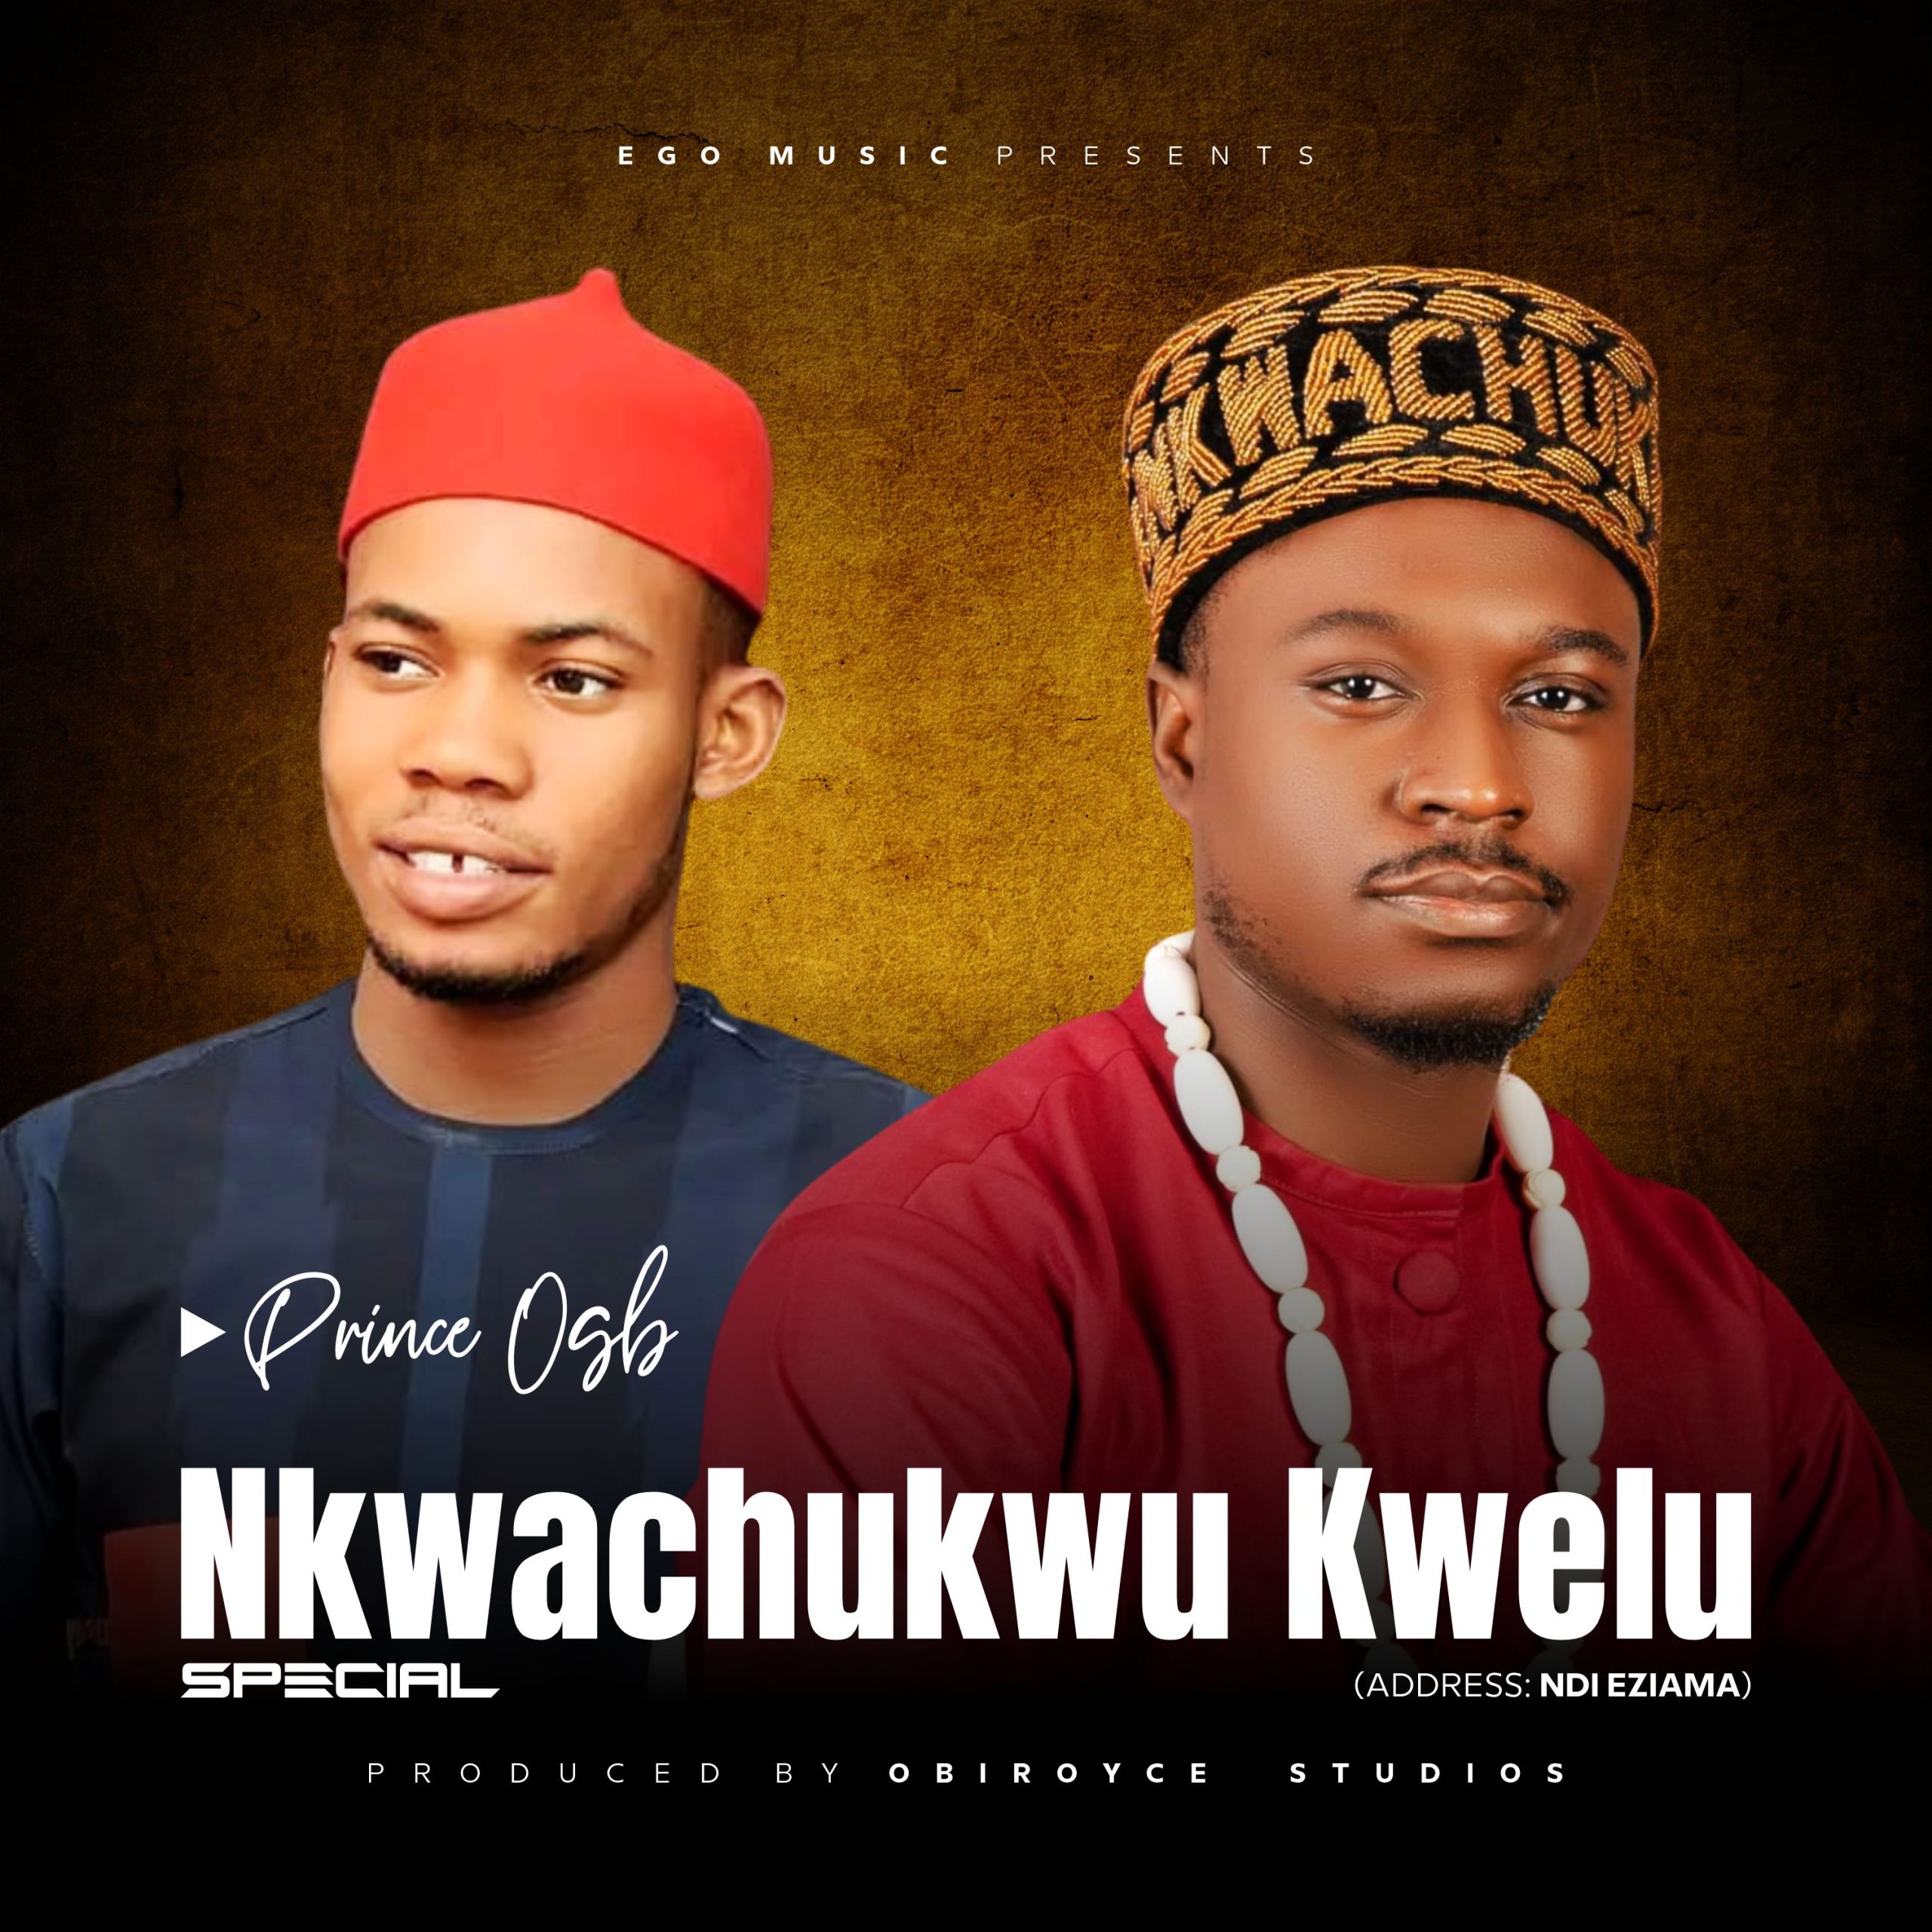 Prince Ogb – Nkwachukwu Kwelu Special